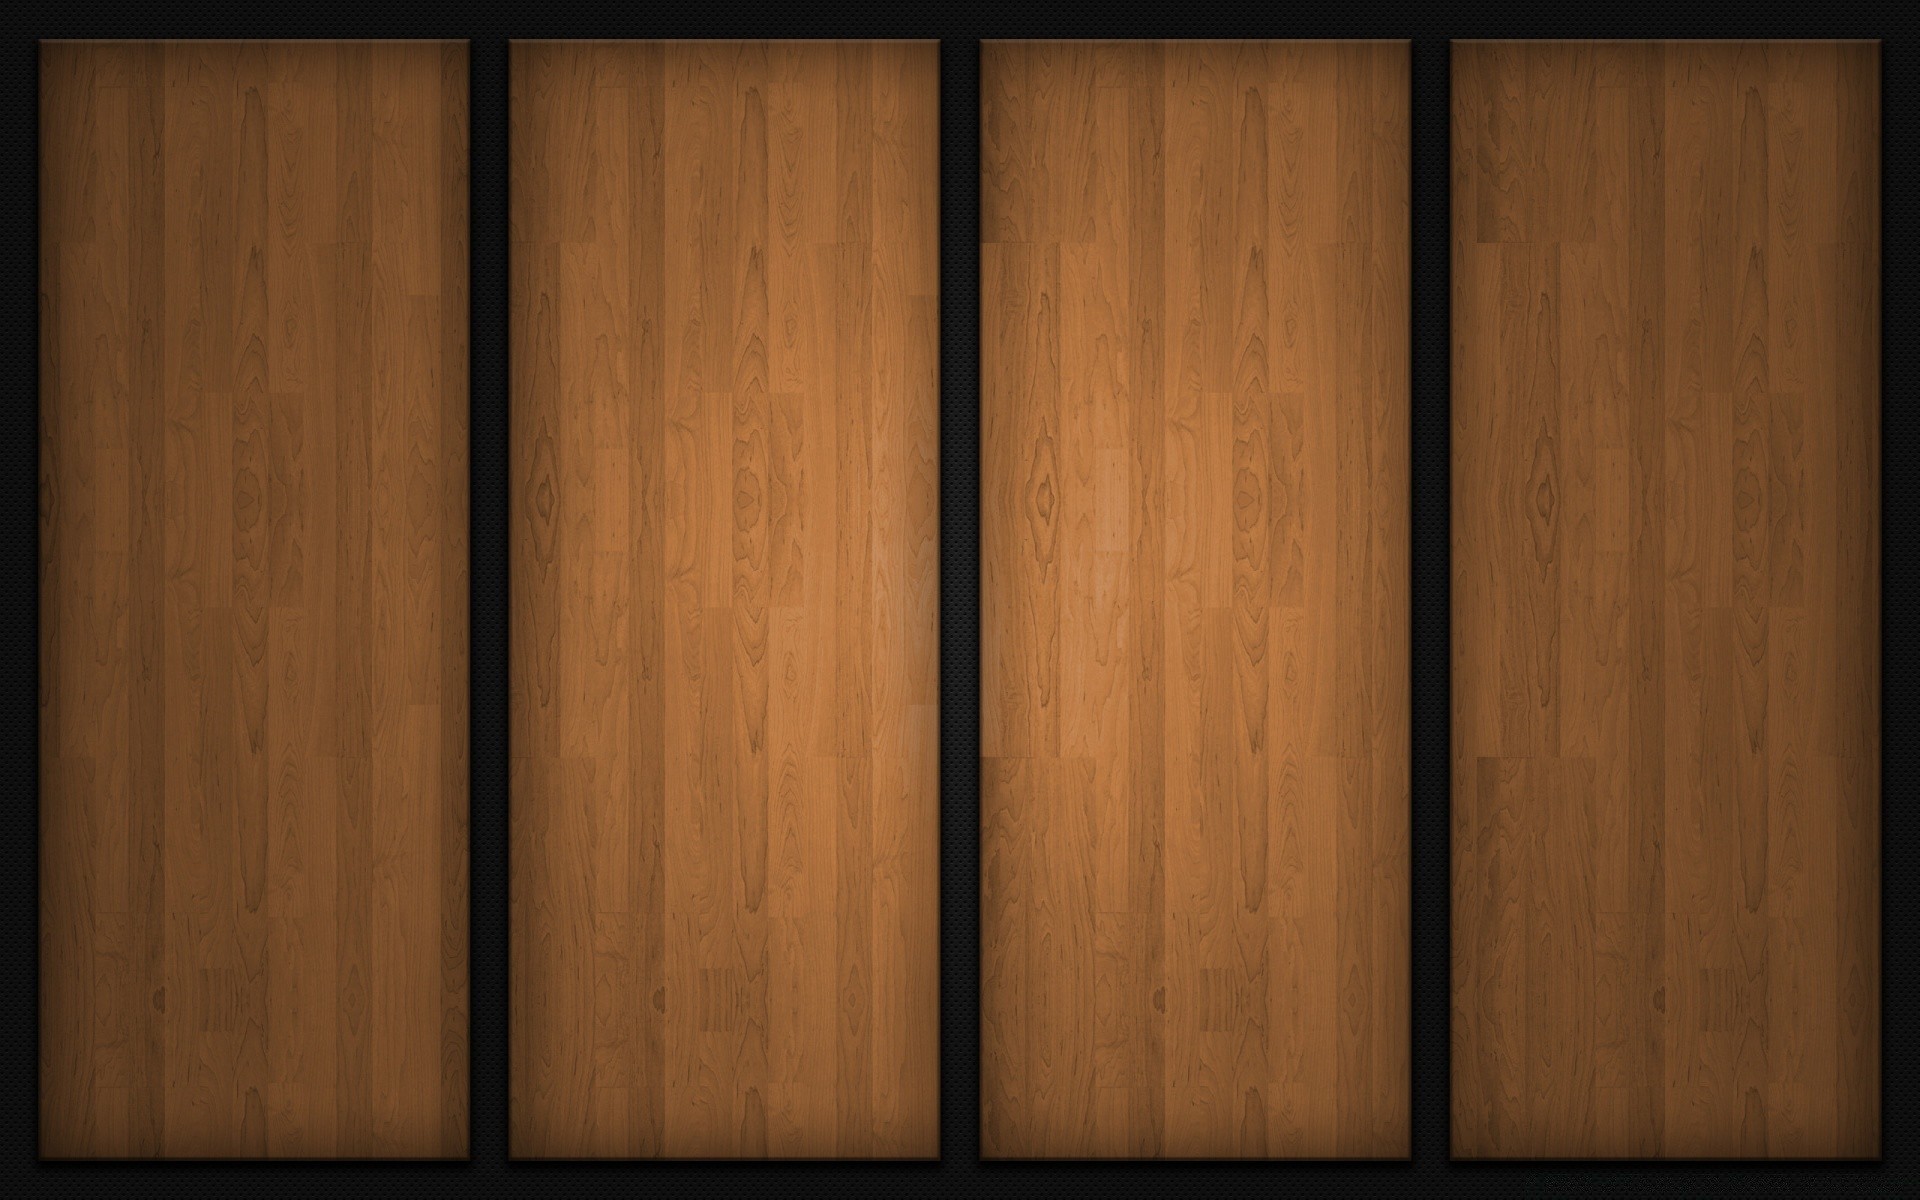 креатив древесины доска деревянные журнал деревянный стены ткань плотницкий панель зерна поверхность винтаж старый пол текстура сосна рабочего стола дуб паркетный ретро